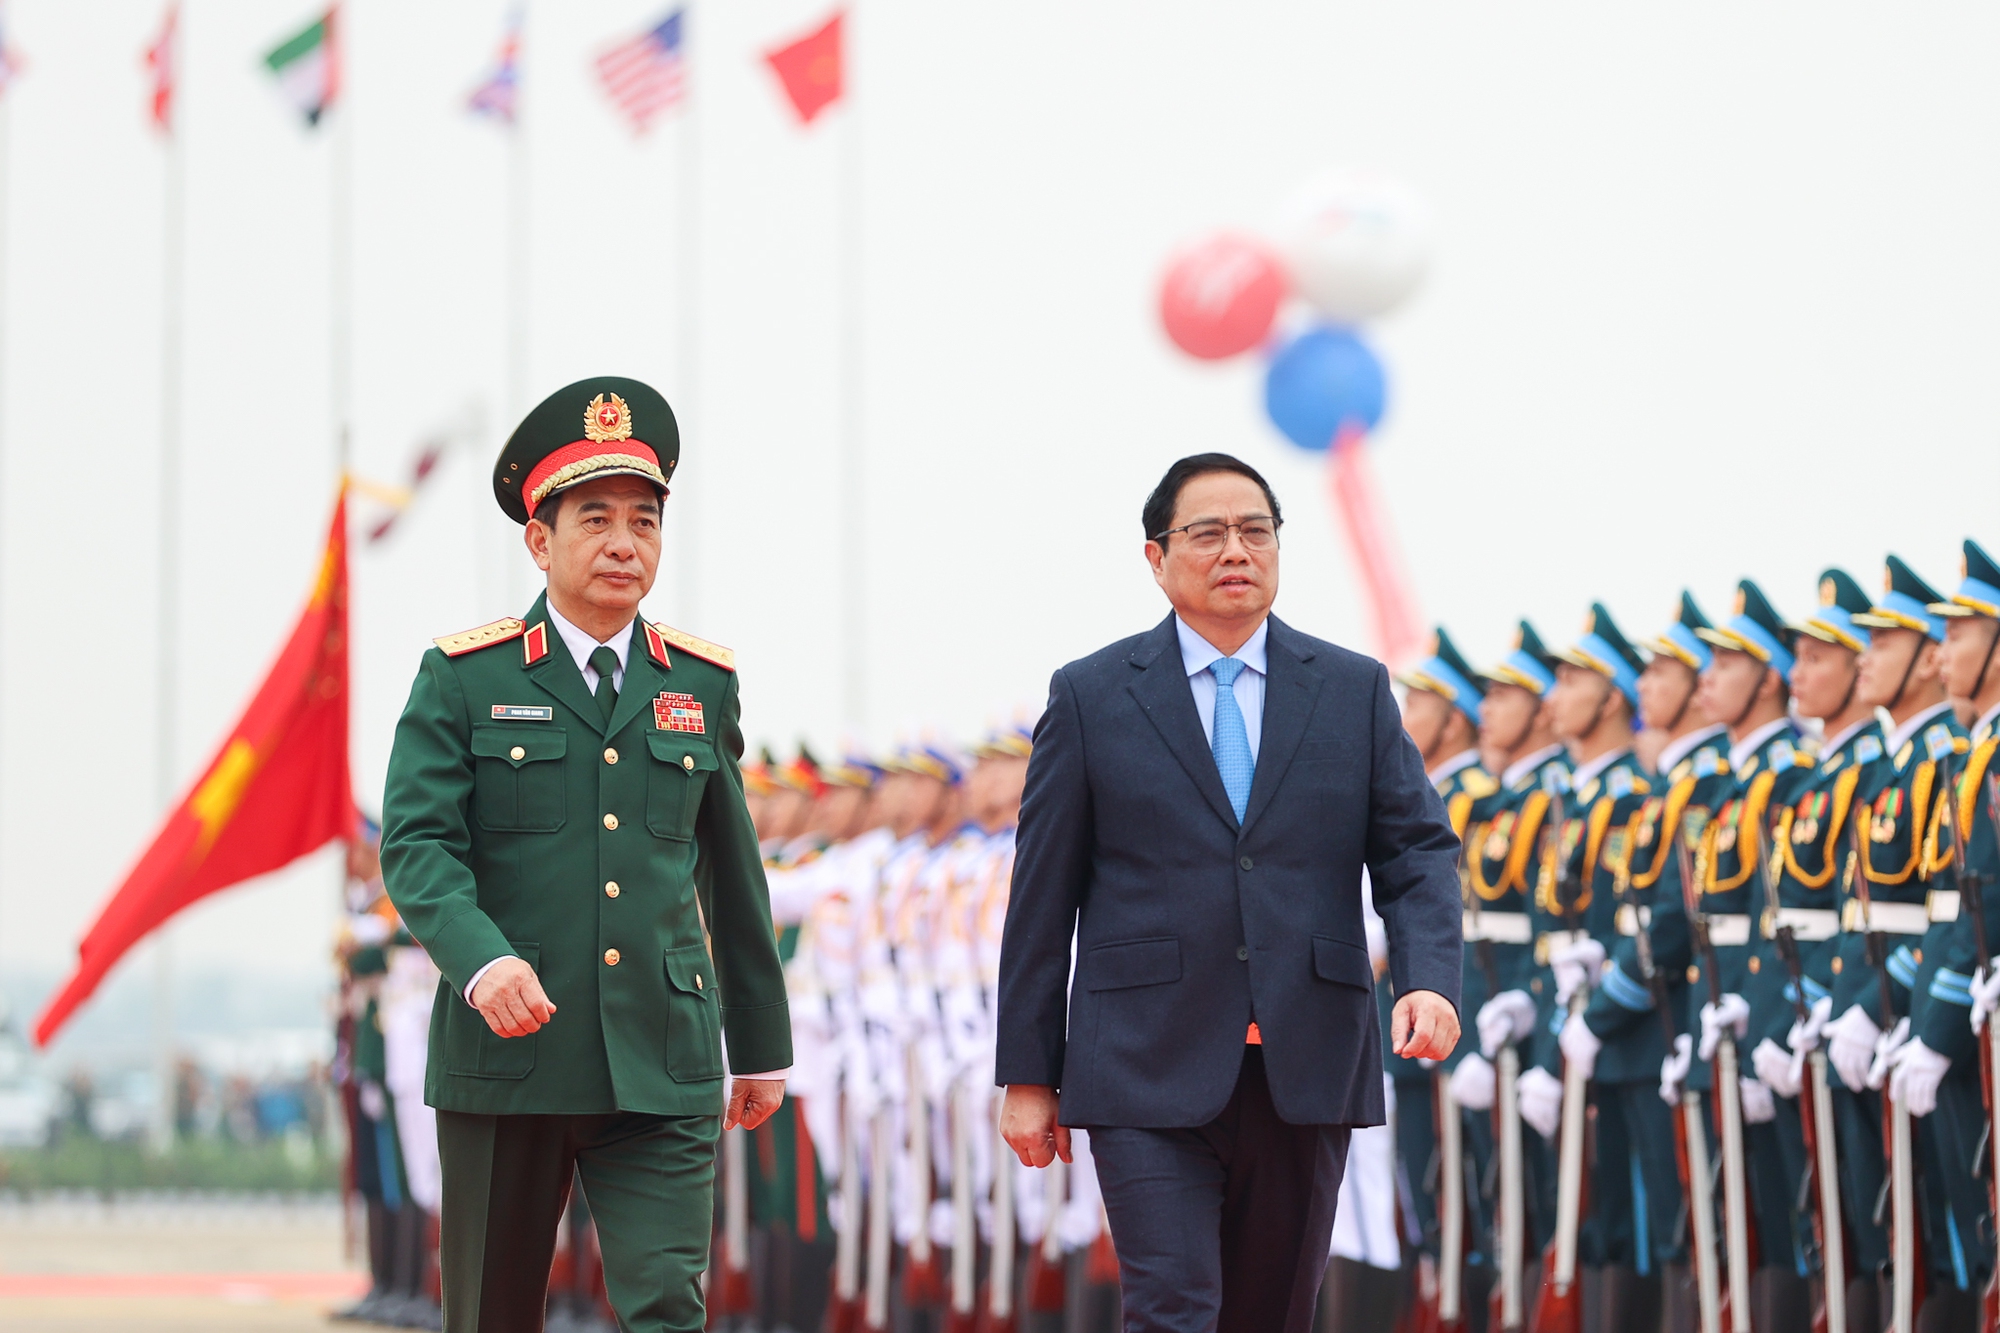 Chính sách quốc phòng của Việt Nam là vì hòa bình, tự vệ, vì nhân dân - Ảnh 1.